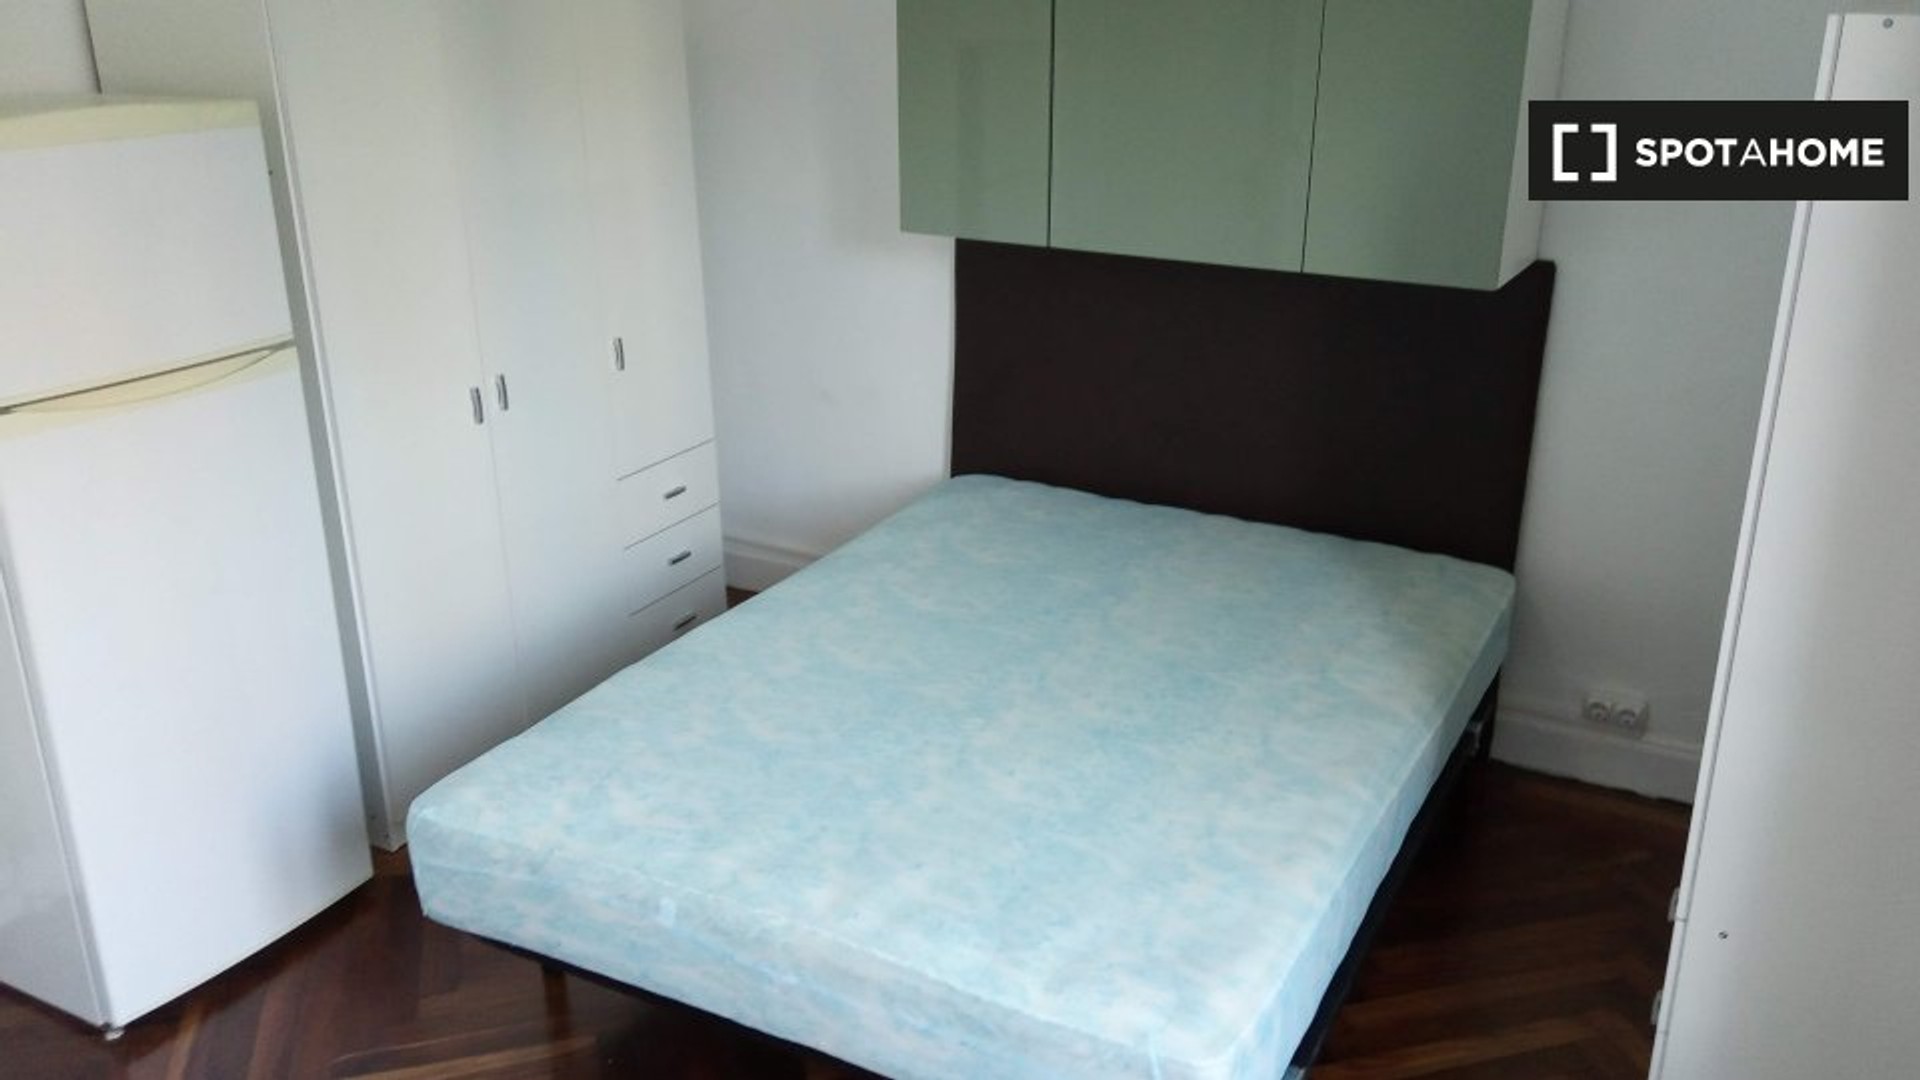 Pokój do wynajęcia z podwójnym łóżkiem w Bilbao